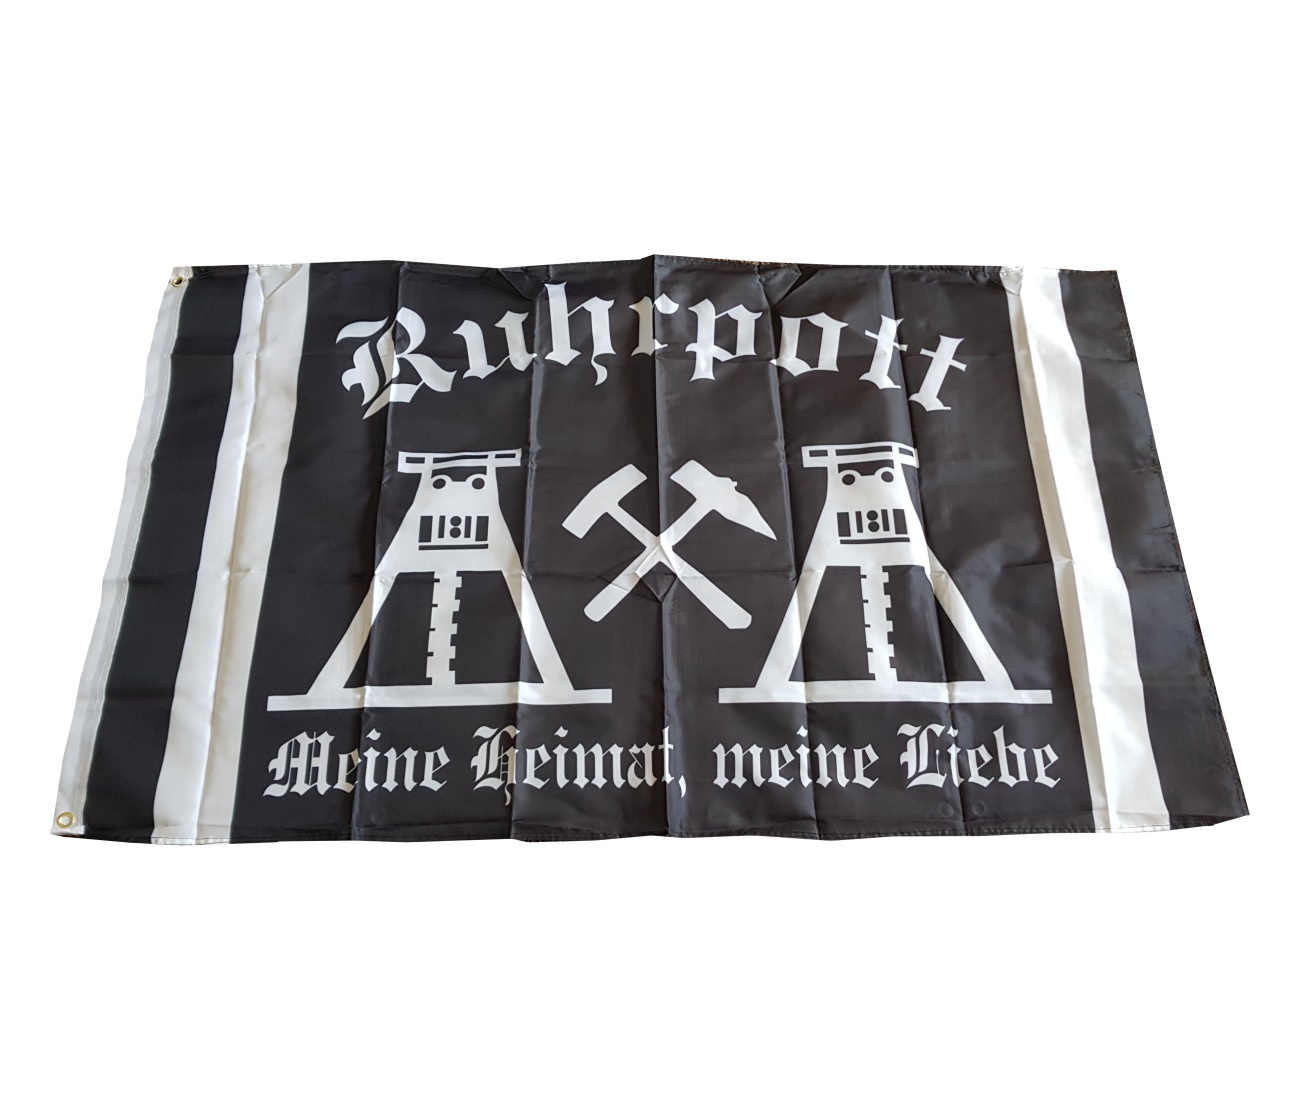 Fahne Ruhrpott Meine Heimat meine Liebe Bootsfahne Tischwimpel Biker 30 x 45cm